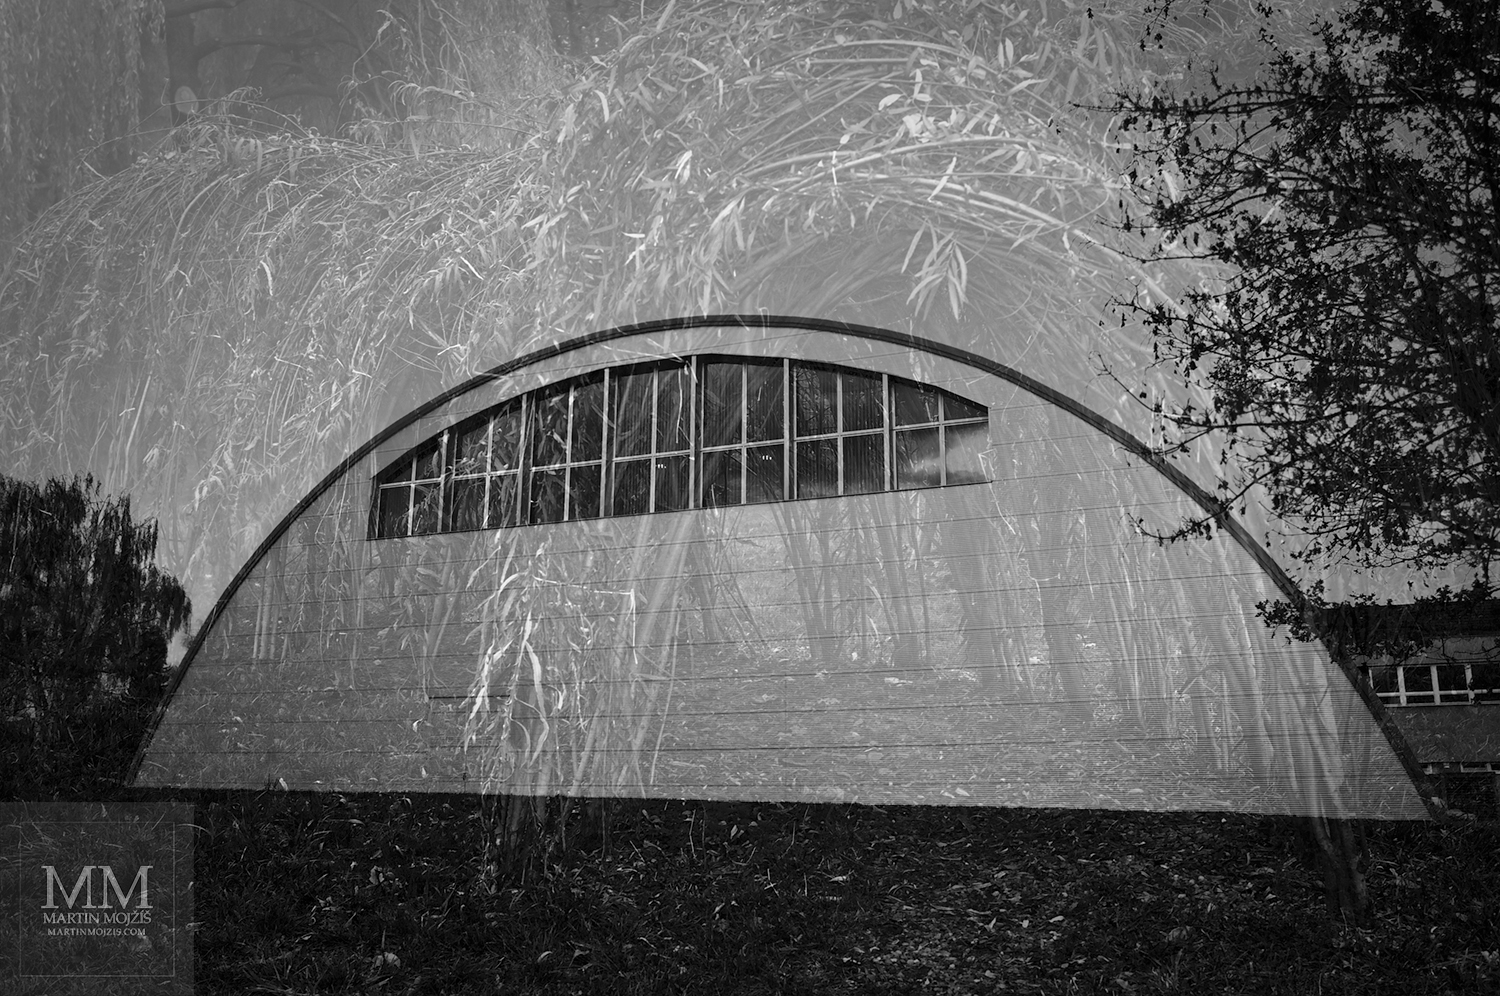 Fotografie sportovní haly prolnutá se stavbou z proutí. Umělecká černobílá fotografie Martina Mojžíše s názvem V ČASE.